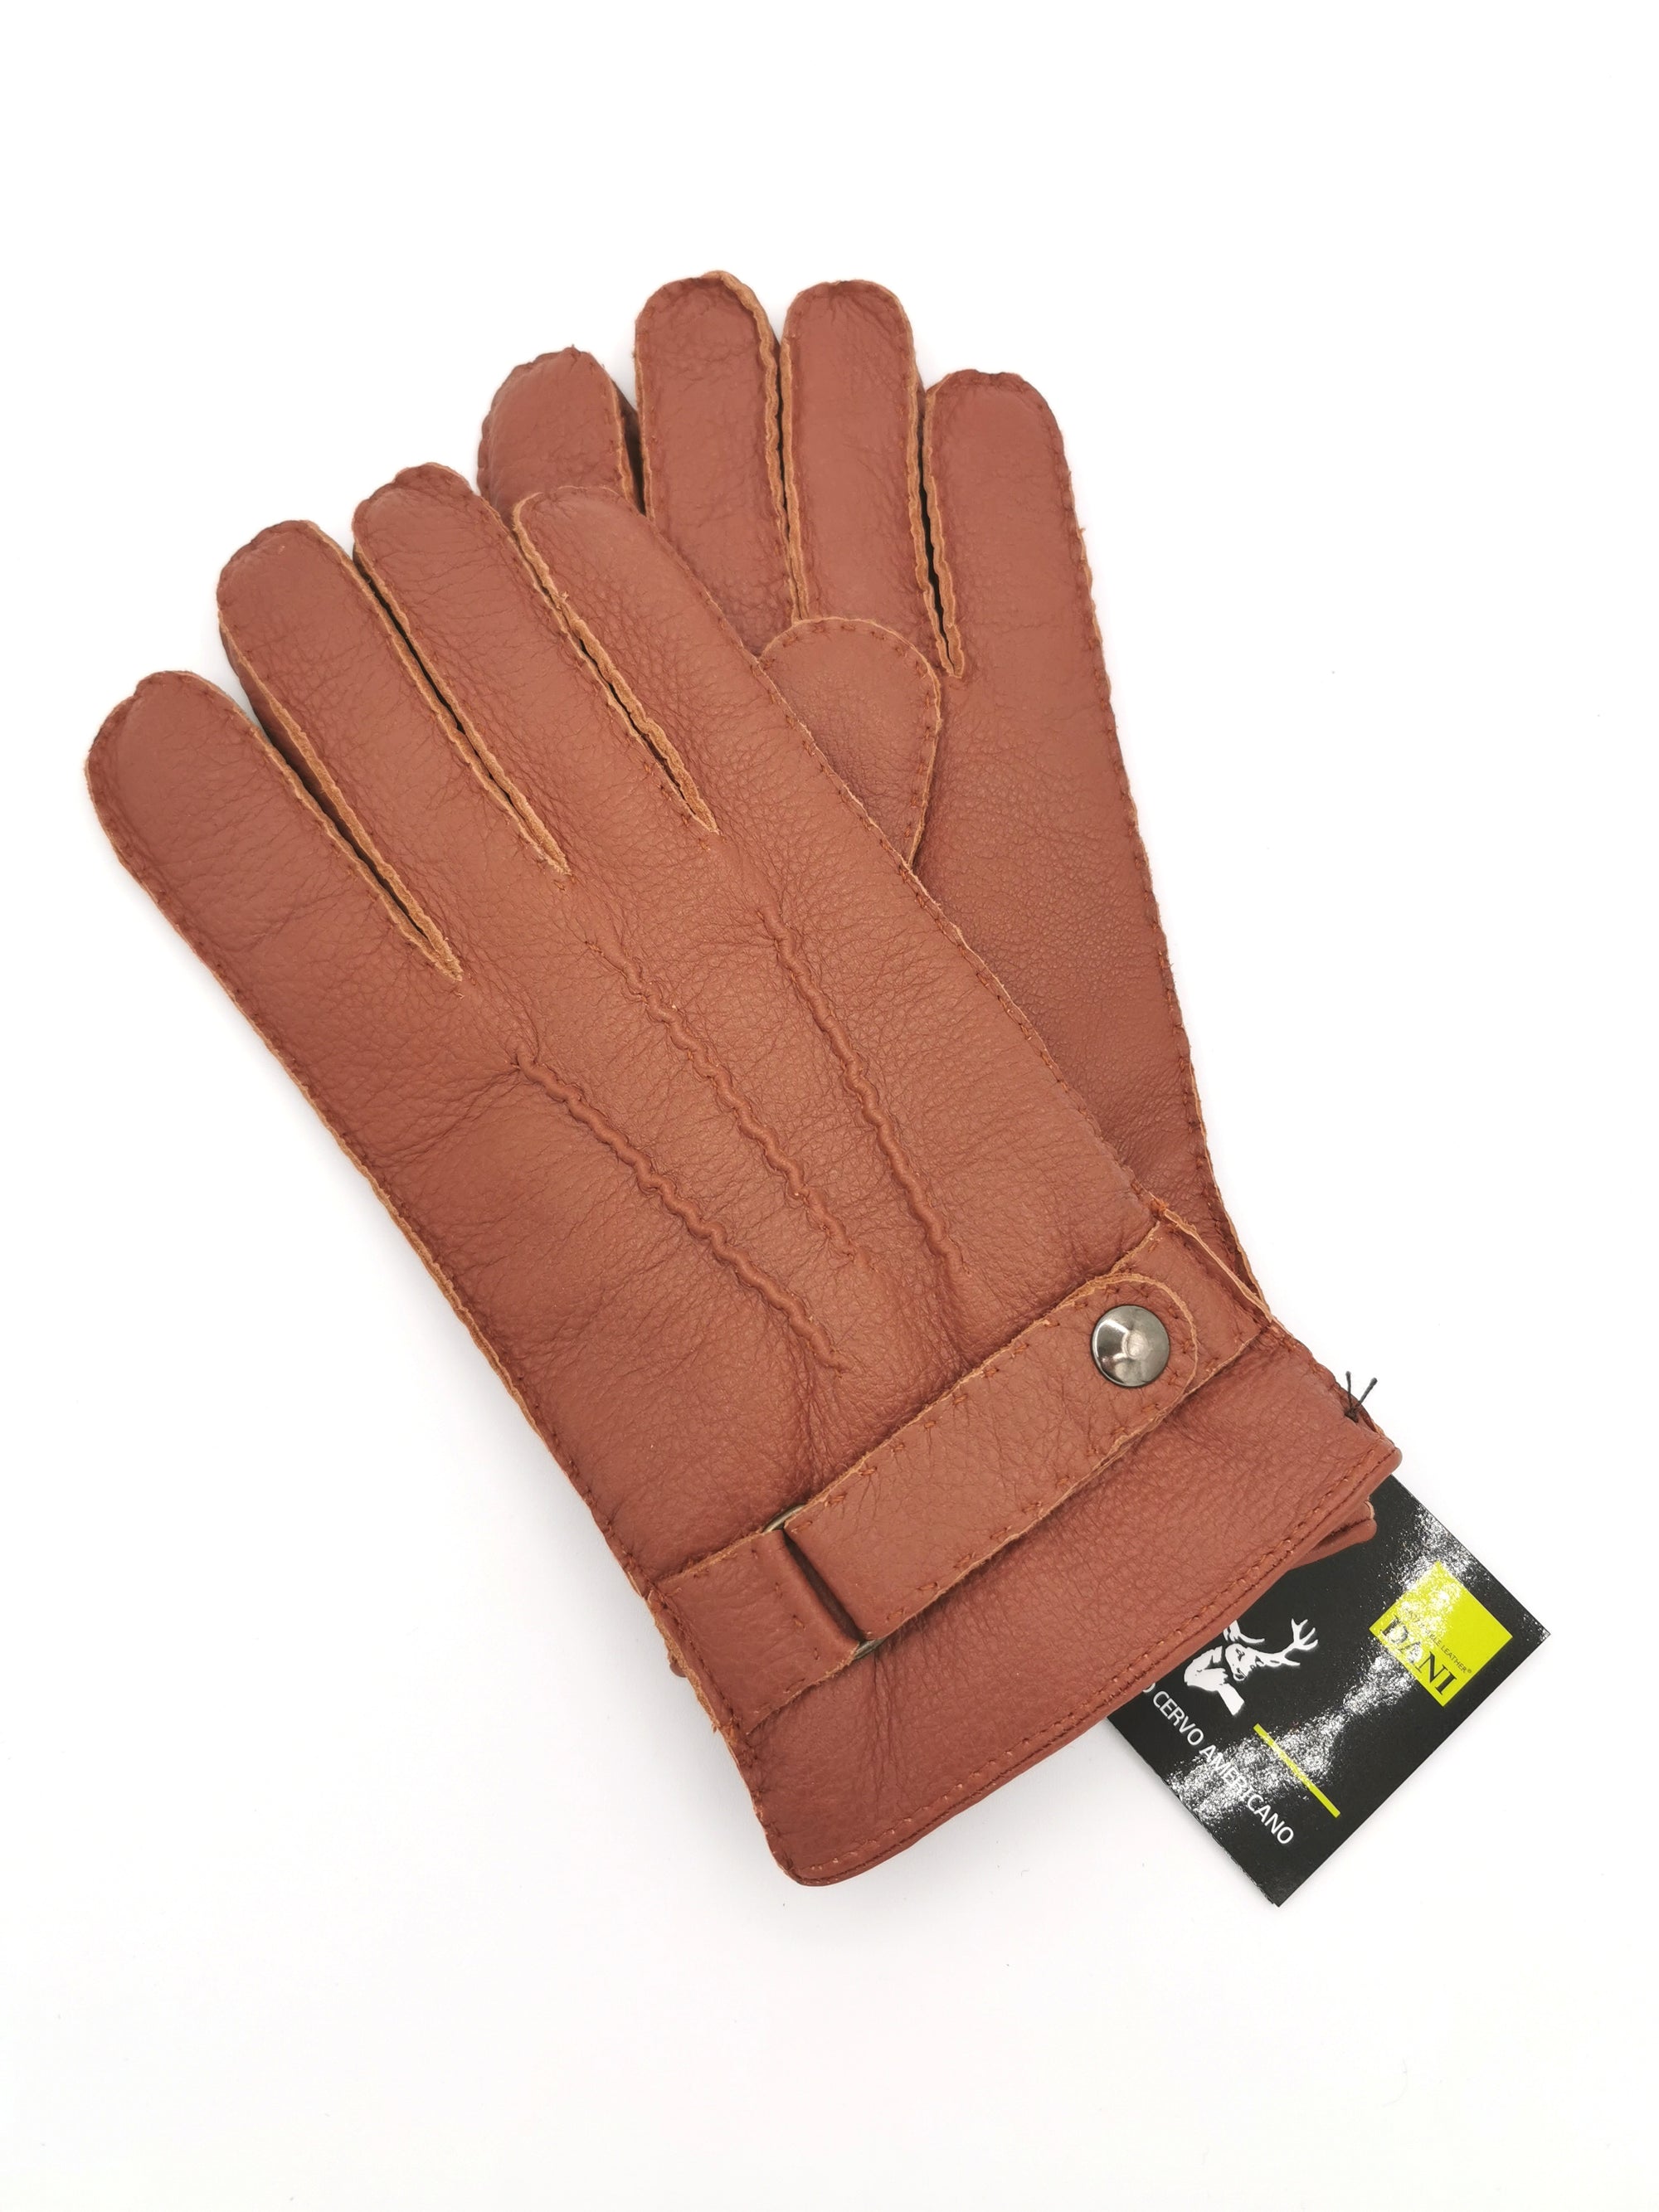 Deerskin gloves with press stud